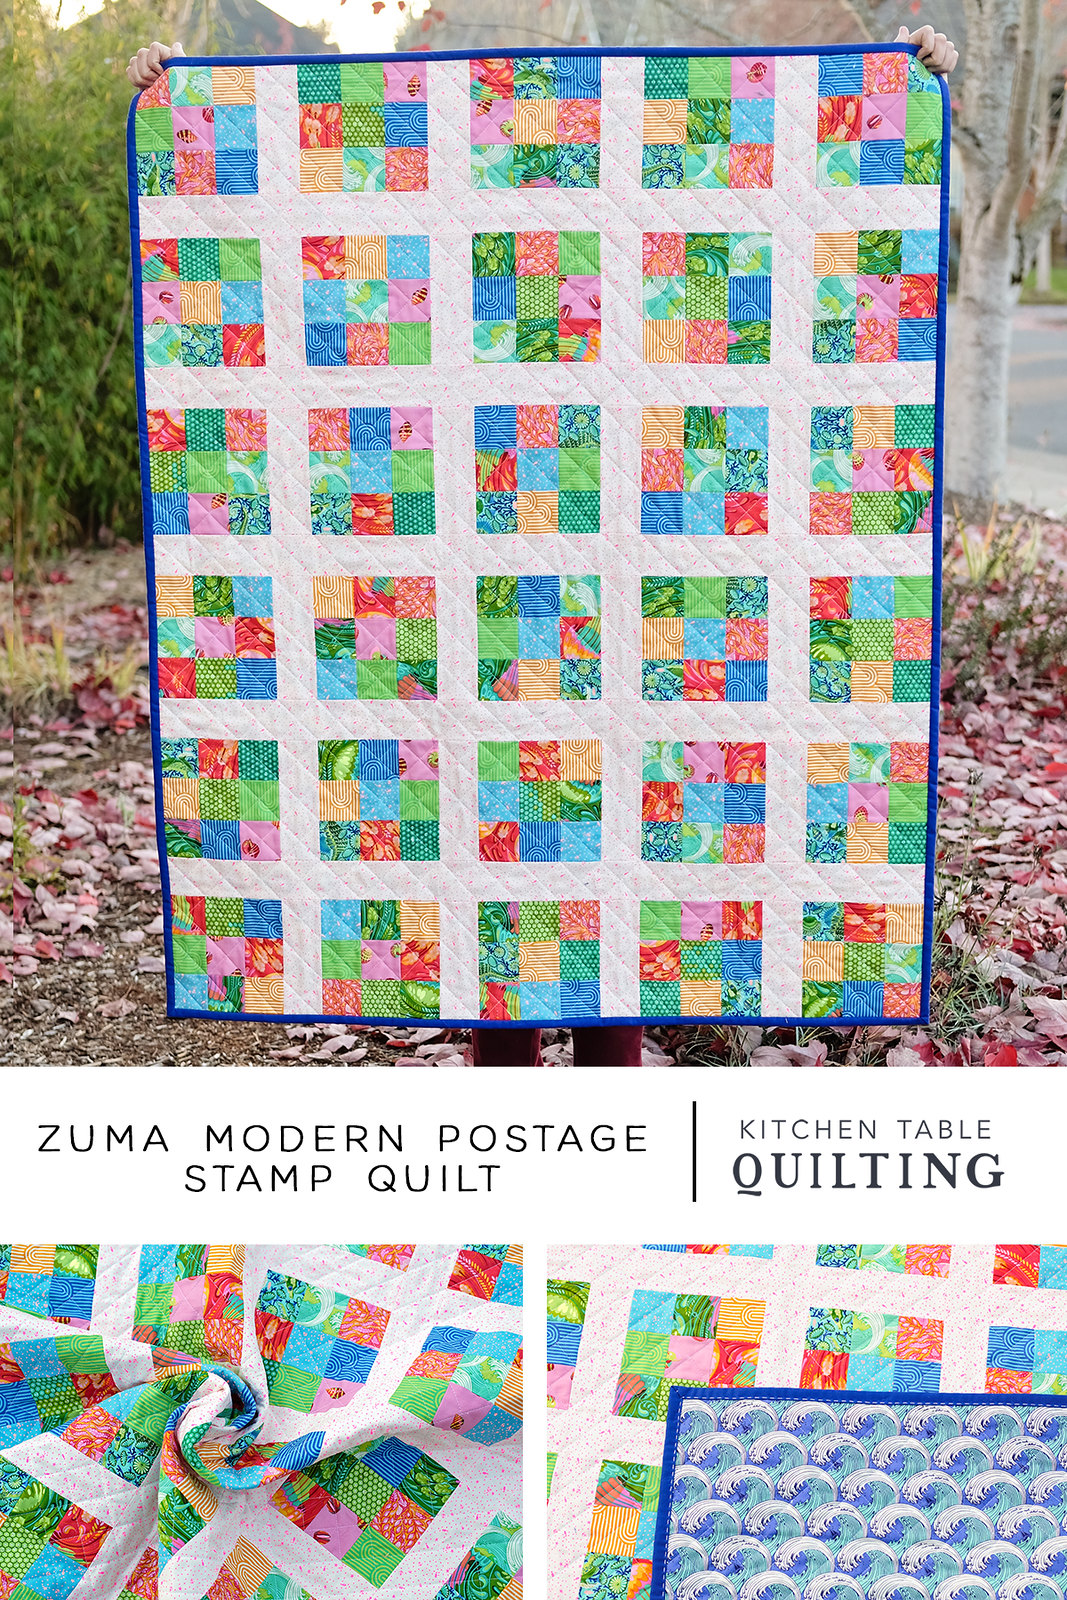 Zuma Modern Postage Stamp Quilt - Kitchen Table Quilting